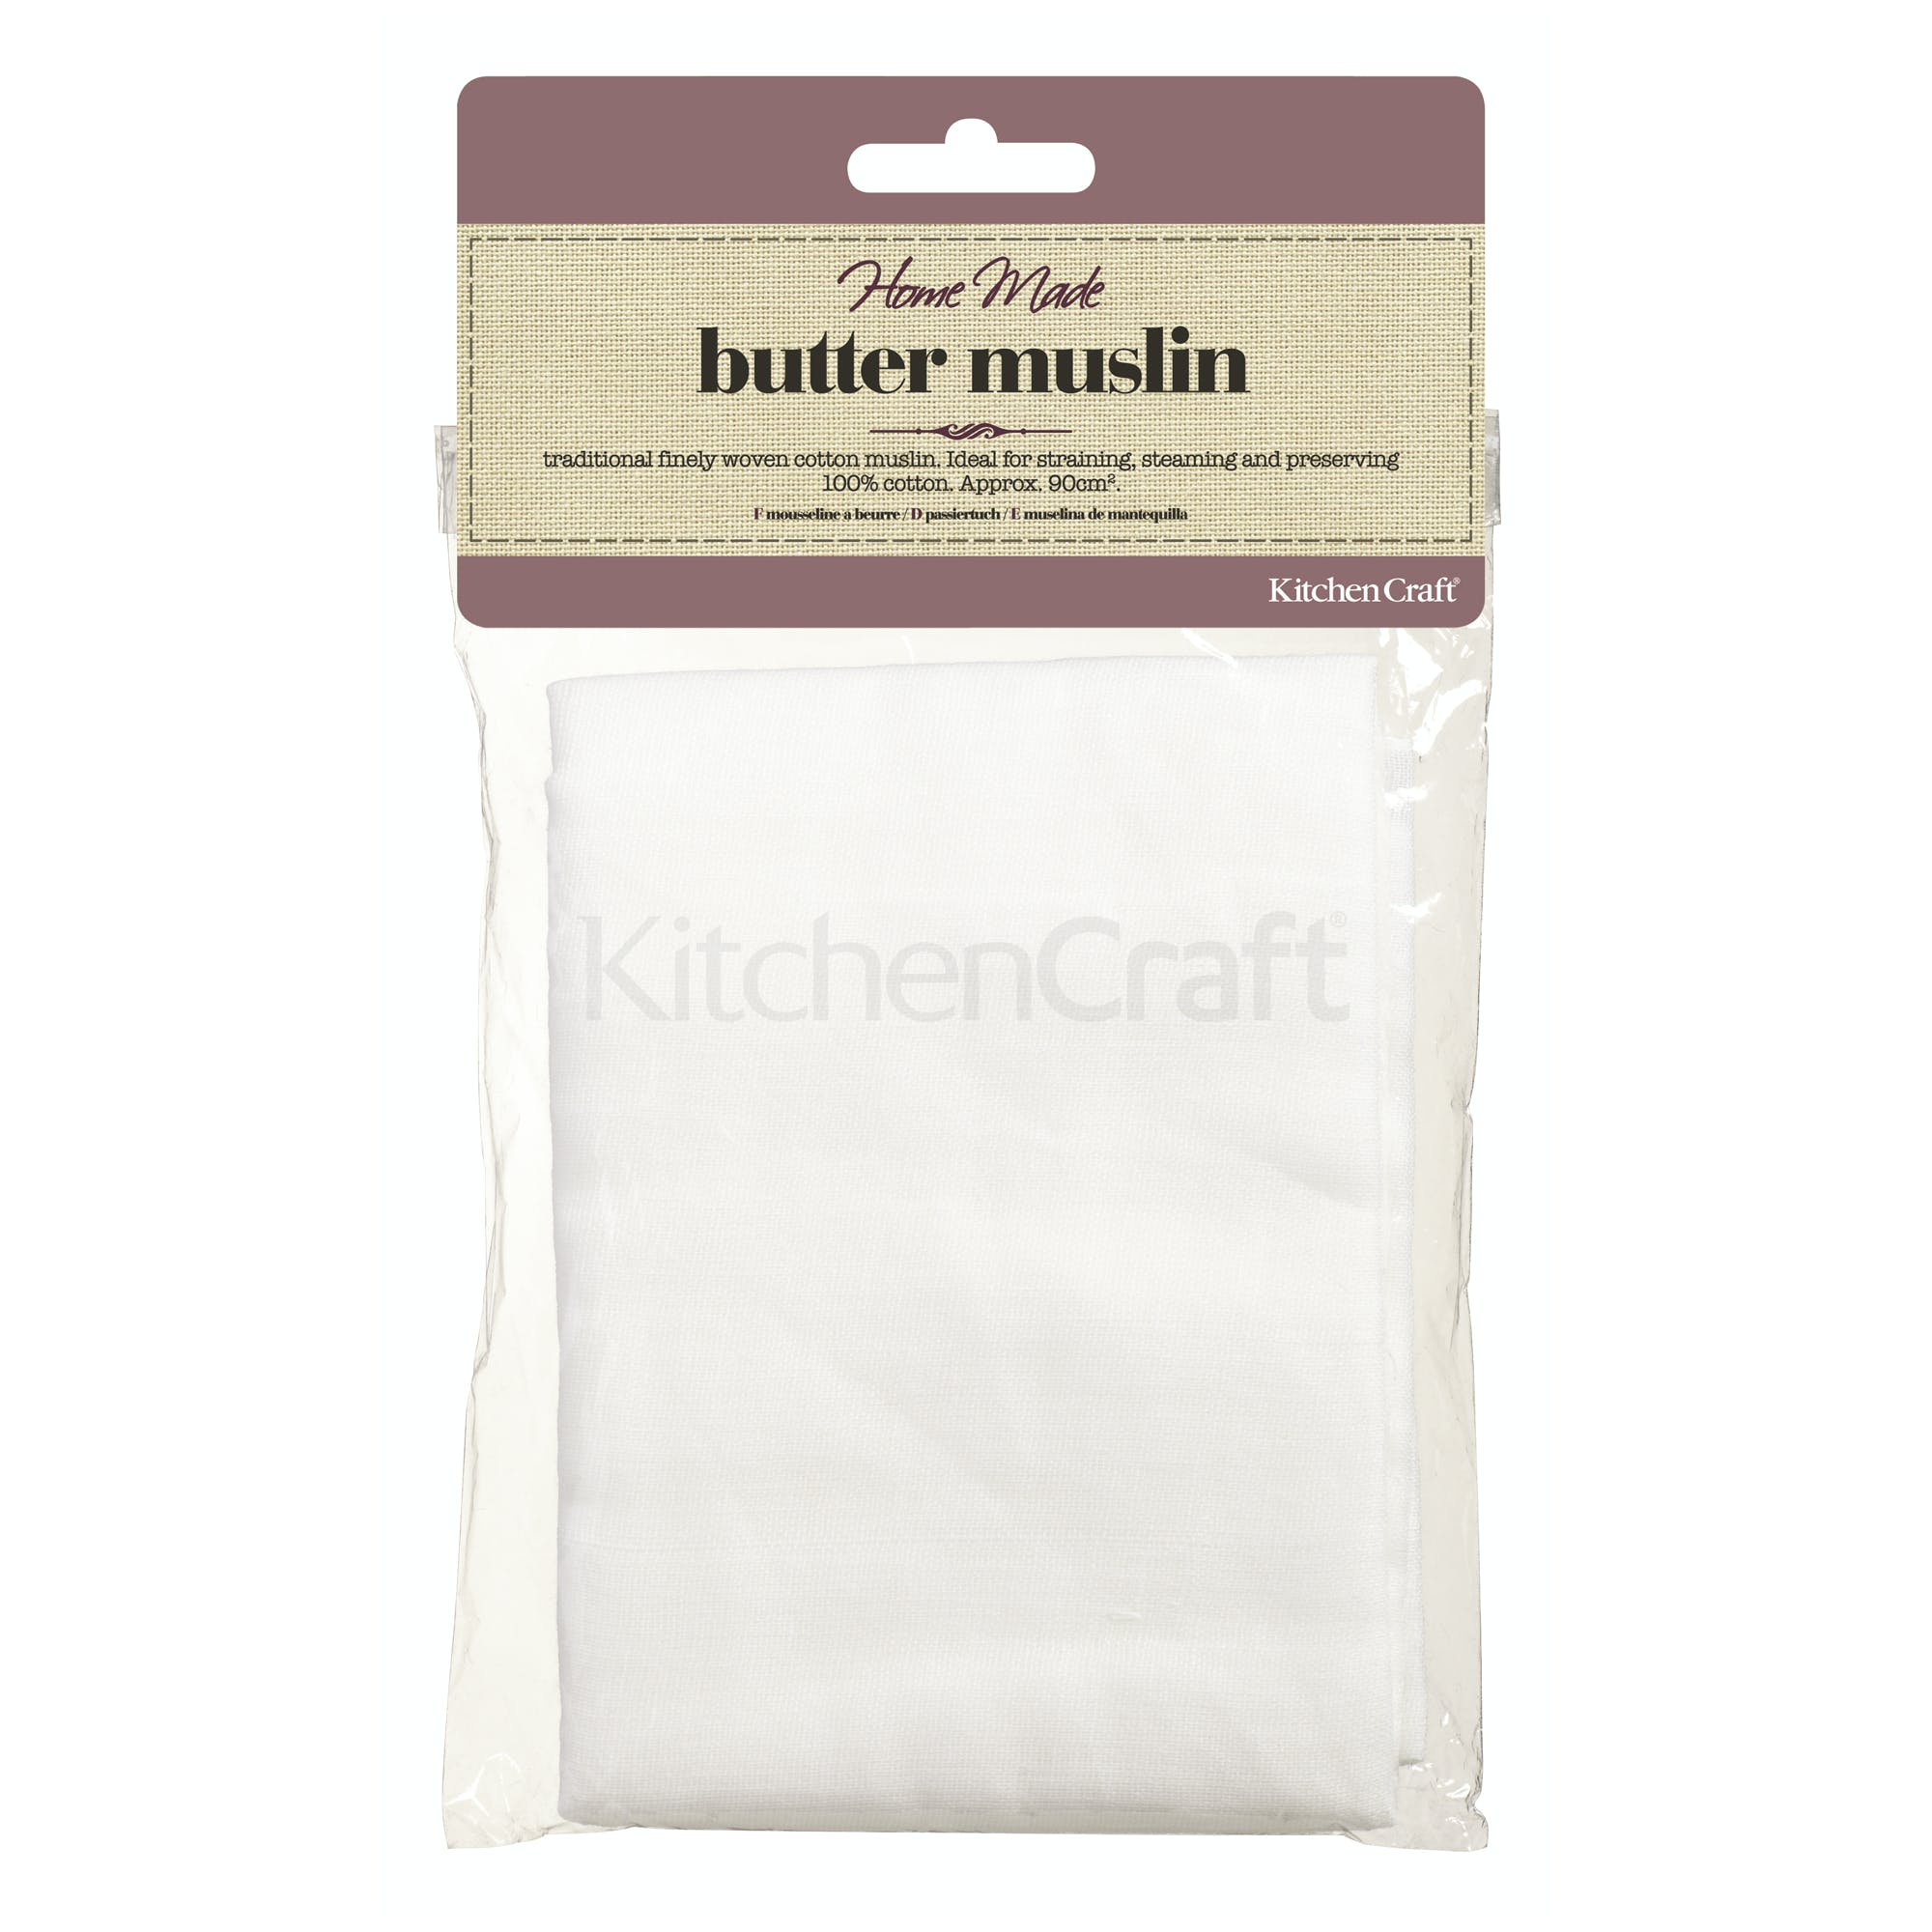 Kitchen Craft Butter Muslin - Kate's Kitchen